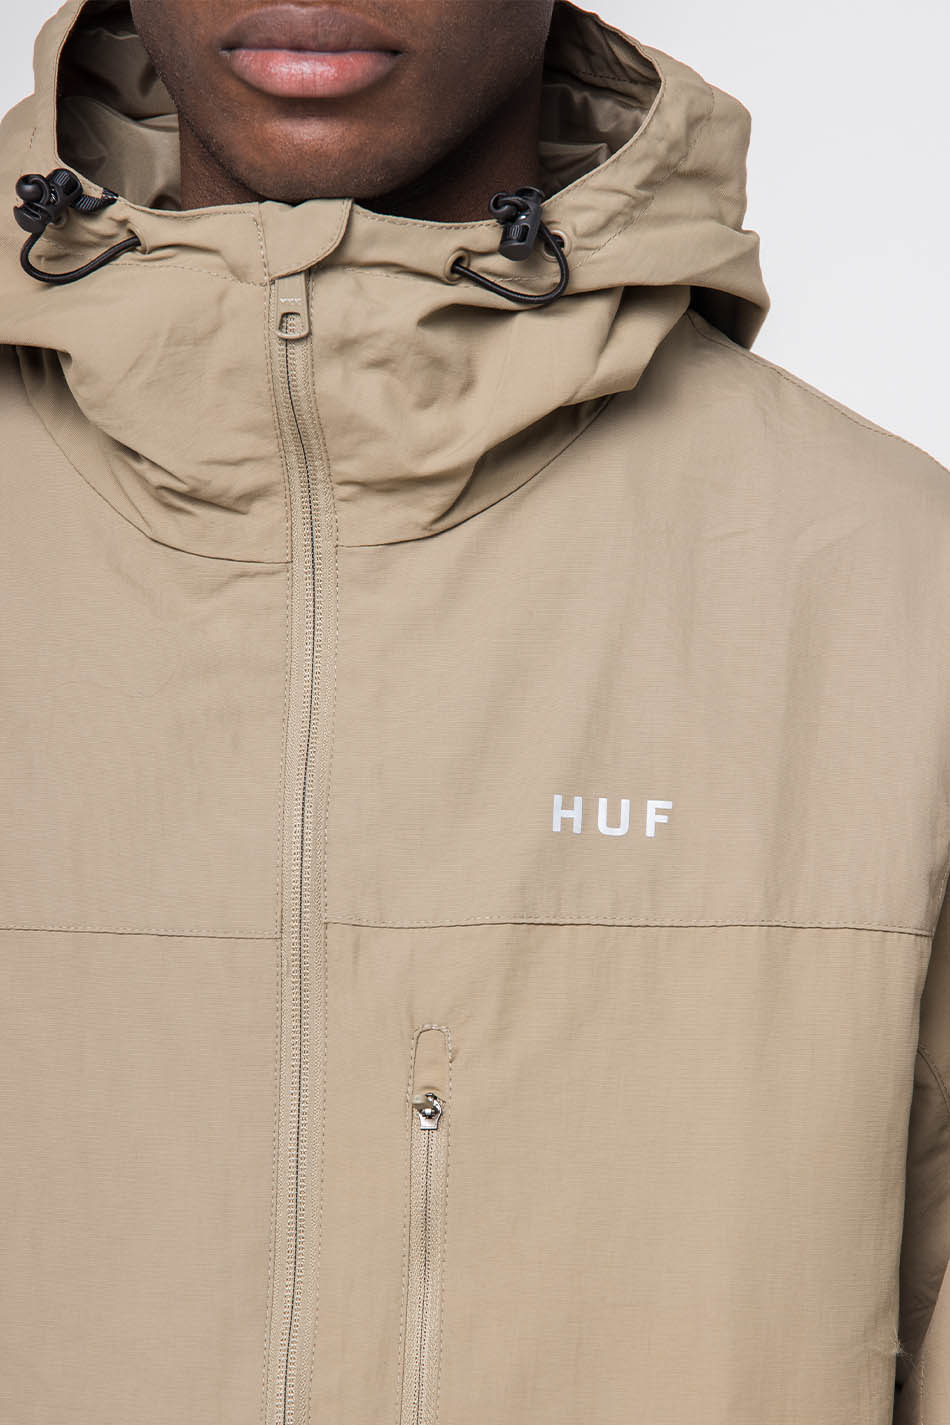 Huf Essentials Zip Jacket